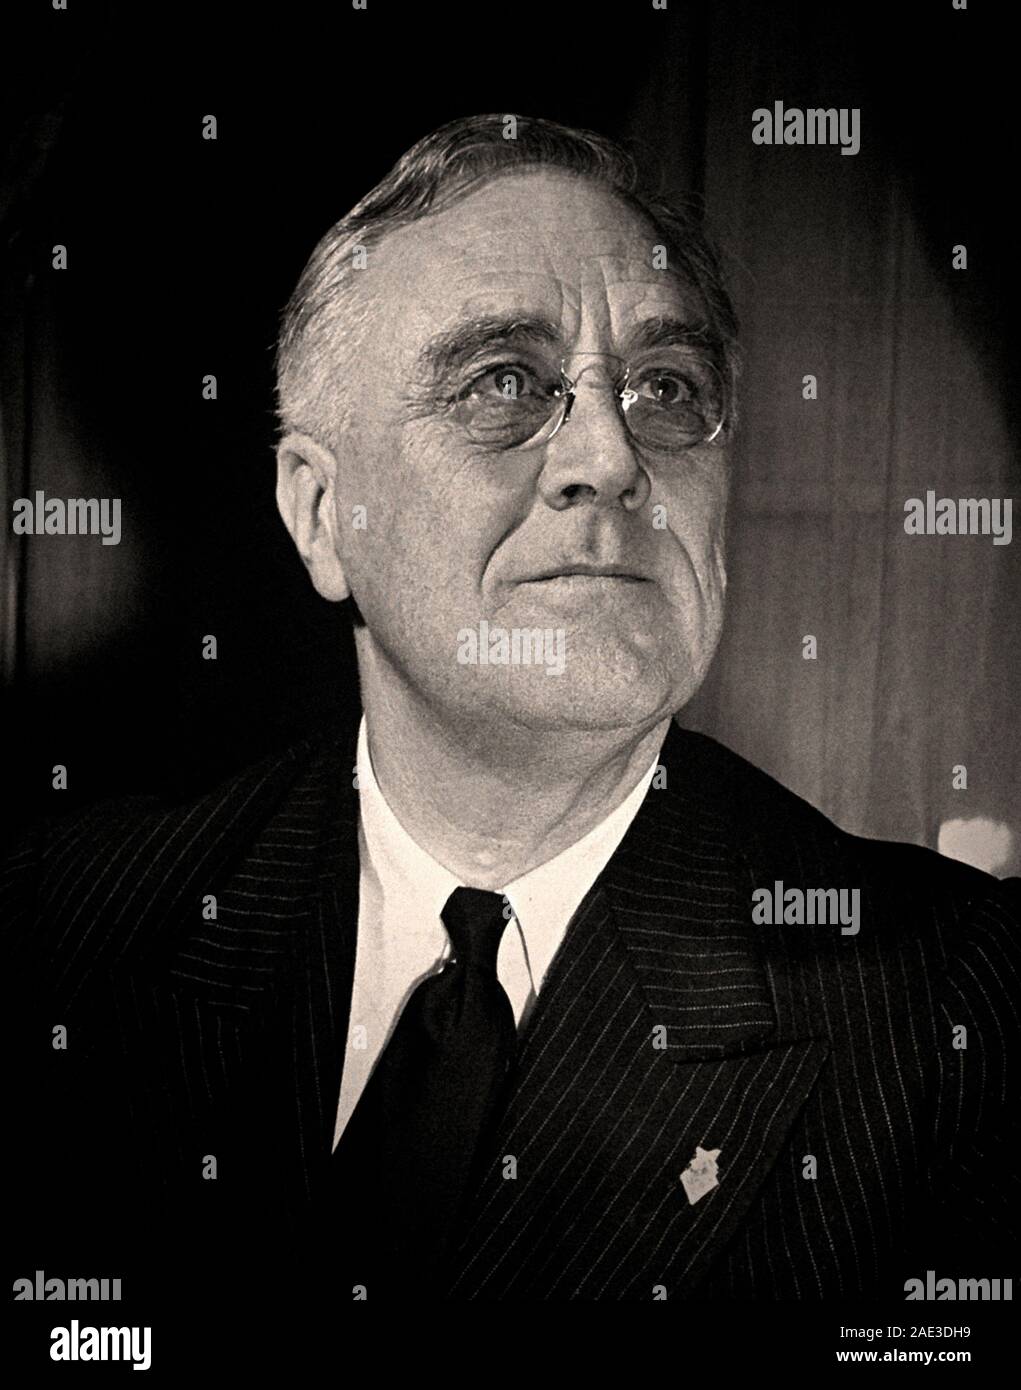 Retrato de Franklin Delano Roosevelt (1882 - 1945) fue un líder político y estadista estadounidense quien sirvió como el 32º presidente de los Estados Unidos. Foto de stock